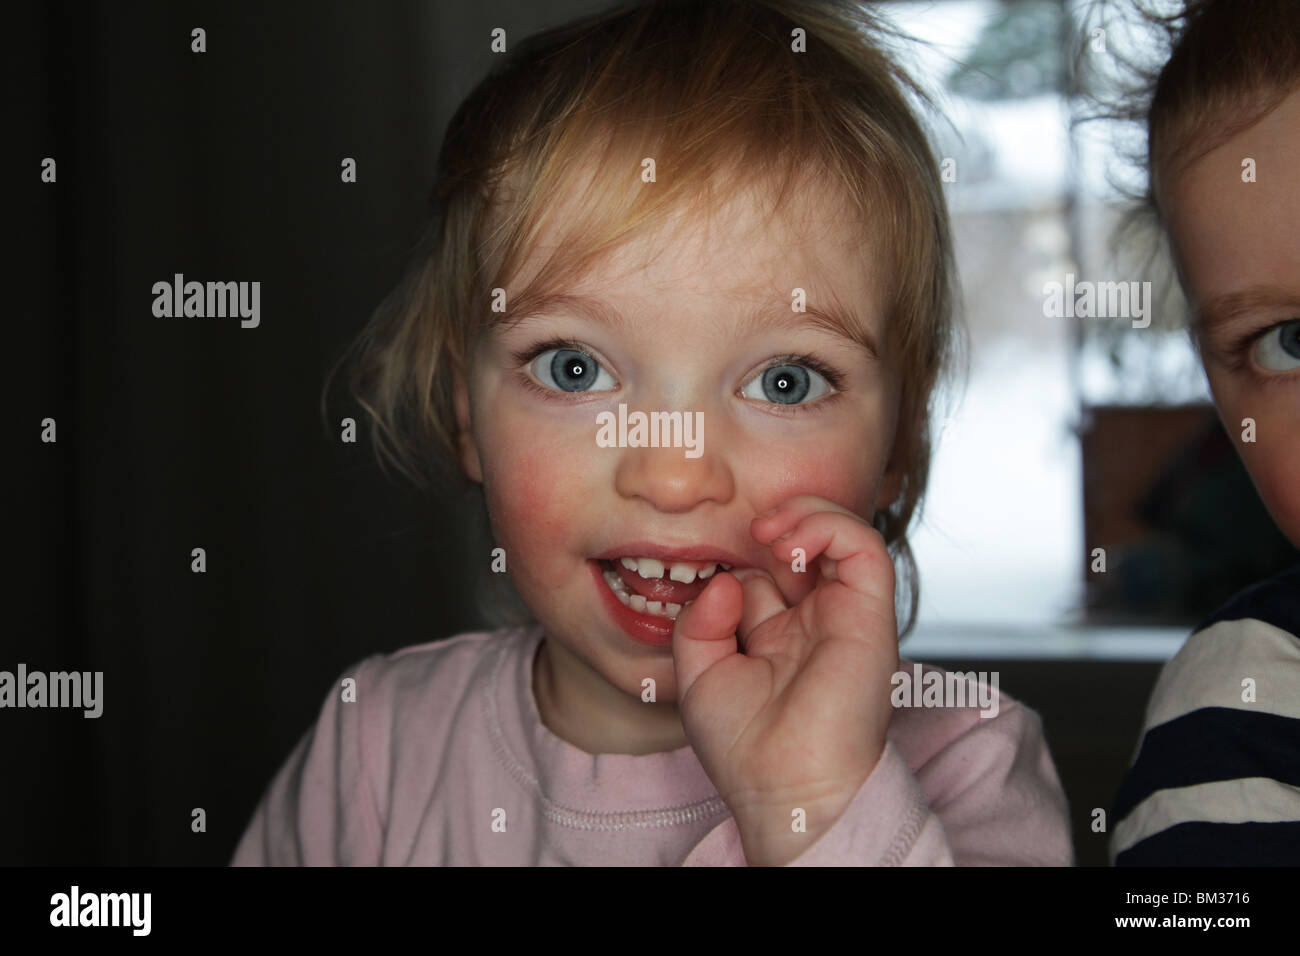 BABY GIRL MIT FINGER IM MUND: Ein Jahr altes Mädchen mit Handfinger im Mund Modell, das mit Ringblitz aufgenommen wurde Stockfoto